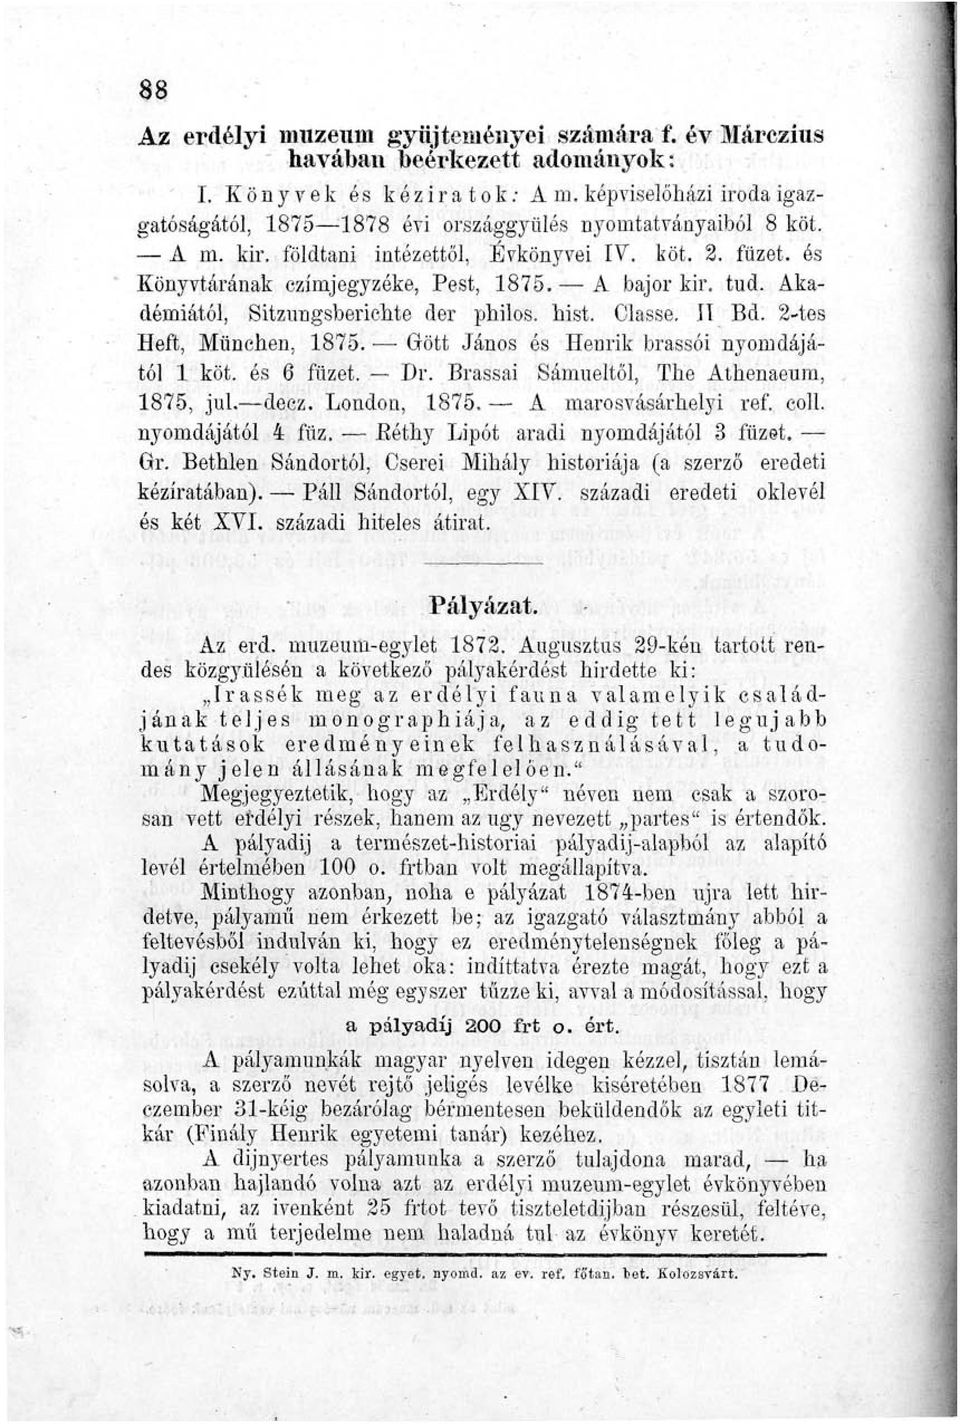 füzet, és Könyvtárának czímjegyzéke, Pest, 1875. A bajor kir. tud. Akadémiától, Sitzungsberichte der philos. hist. Classe. II Bd. 2-tes Heft, München, 1875.